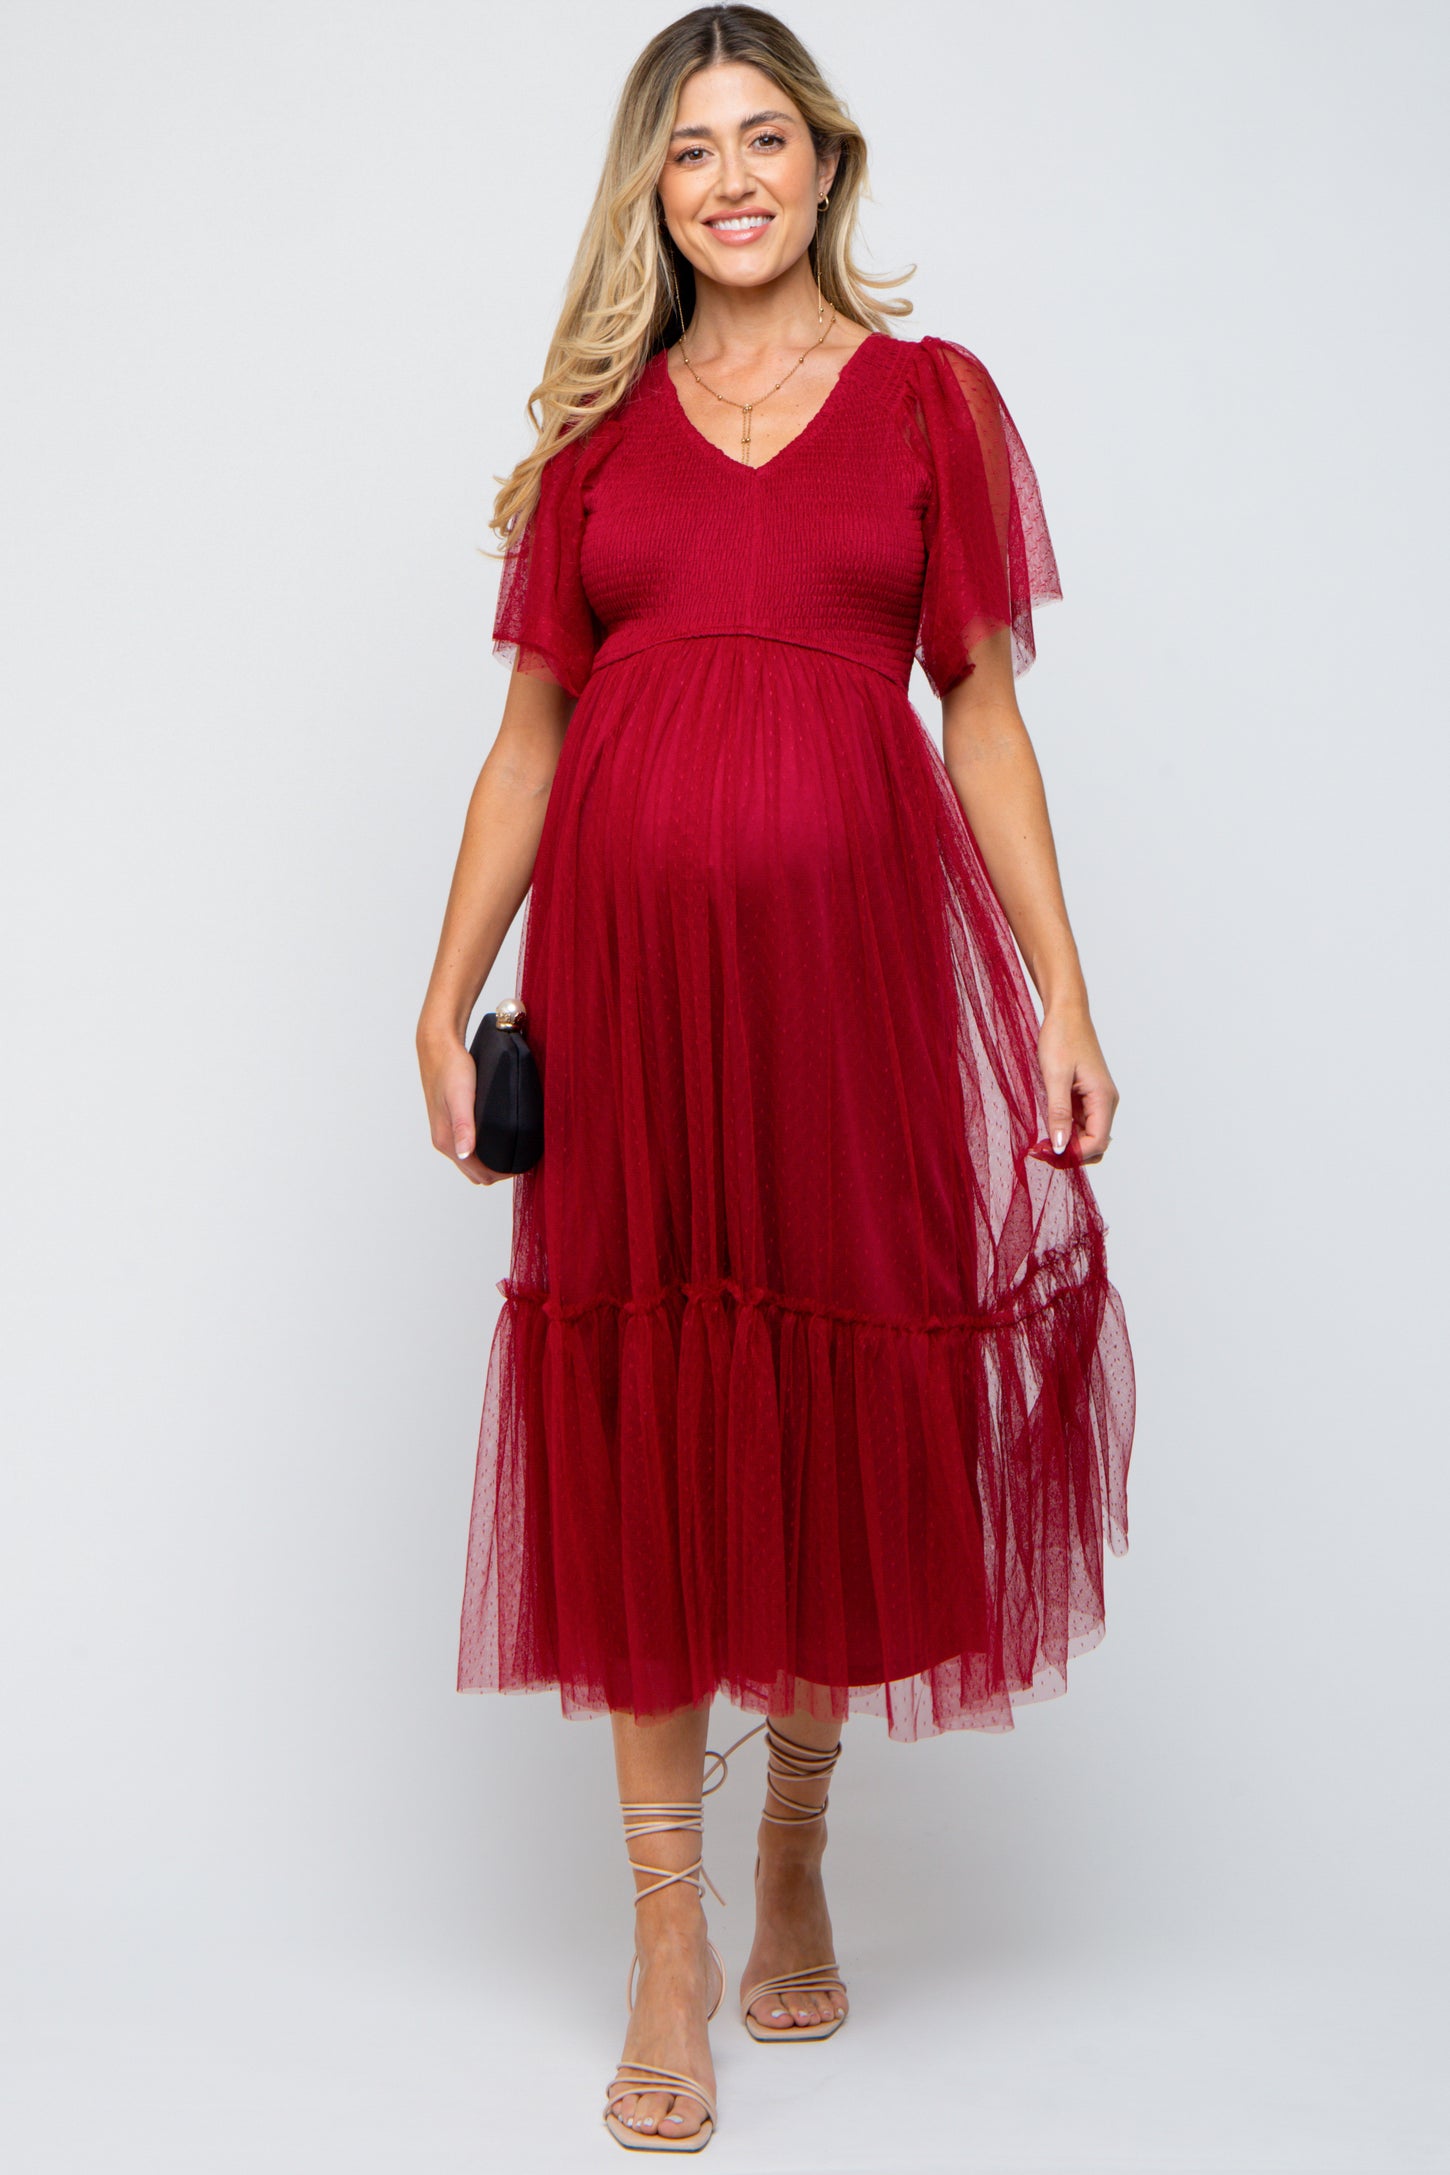 Red maternity dress ricarica (PinkBlush Maternity Size M Long Long